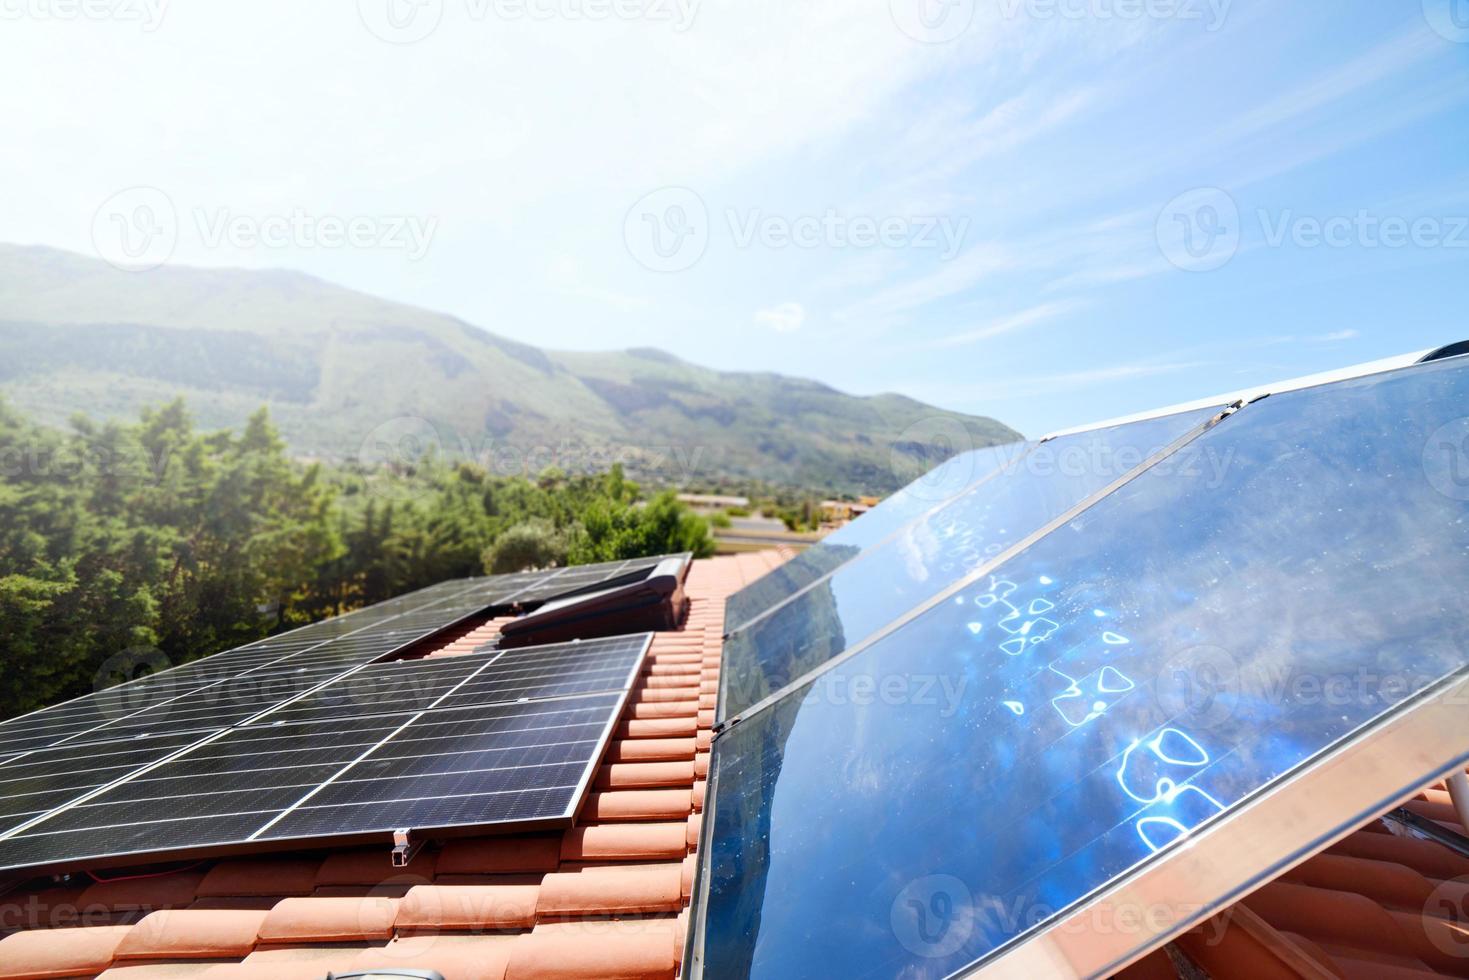 renovable energía sistema con solar panel para electricidad y caliente agua foto